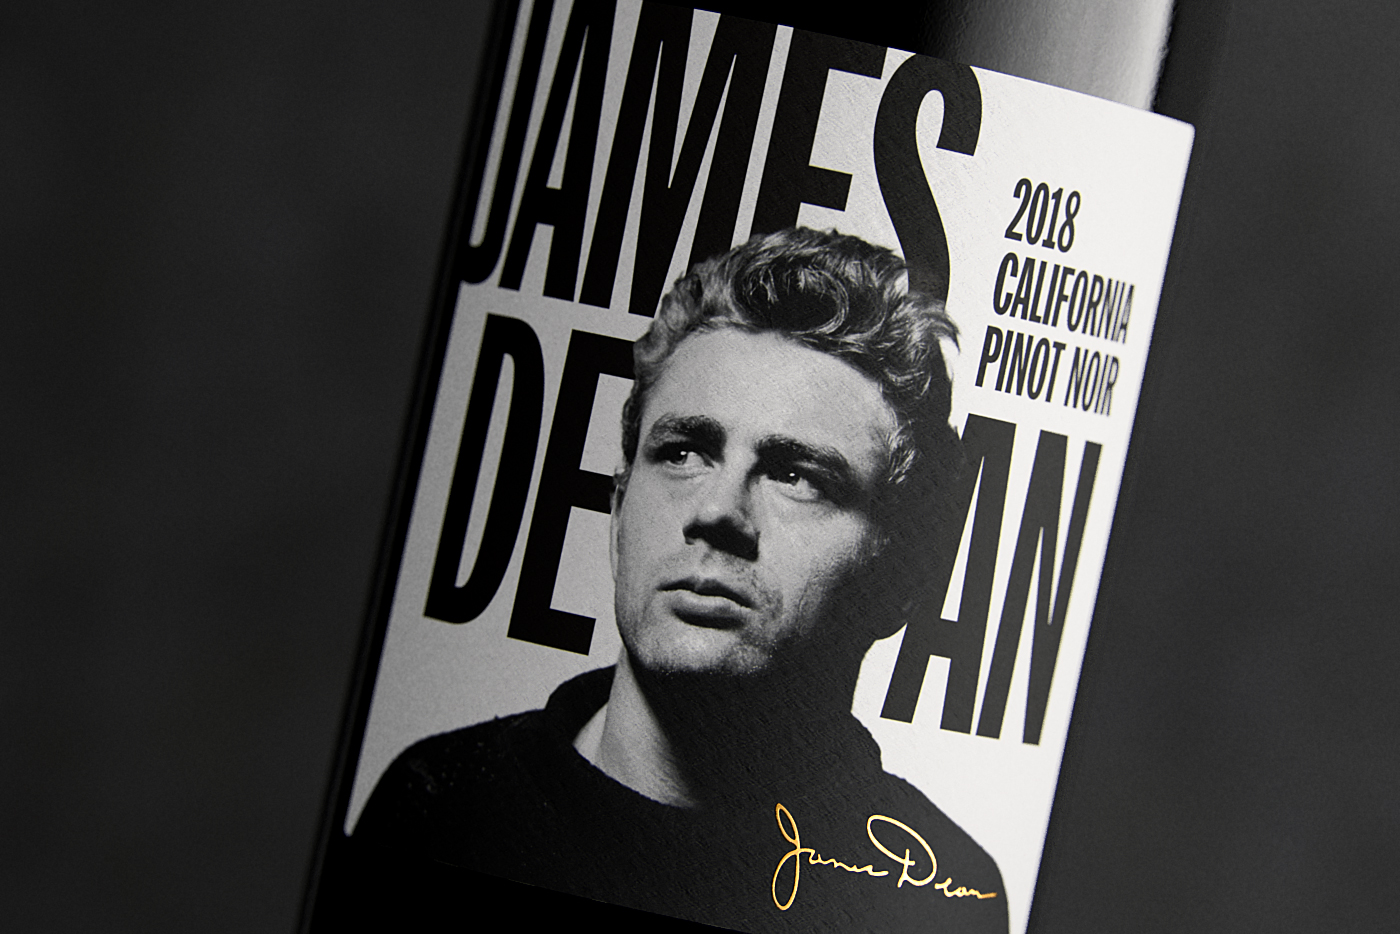 James Dean — Pinot Noir